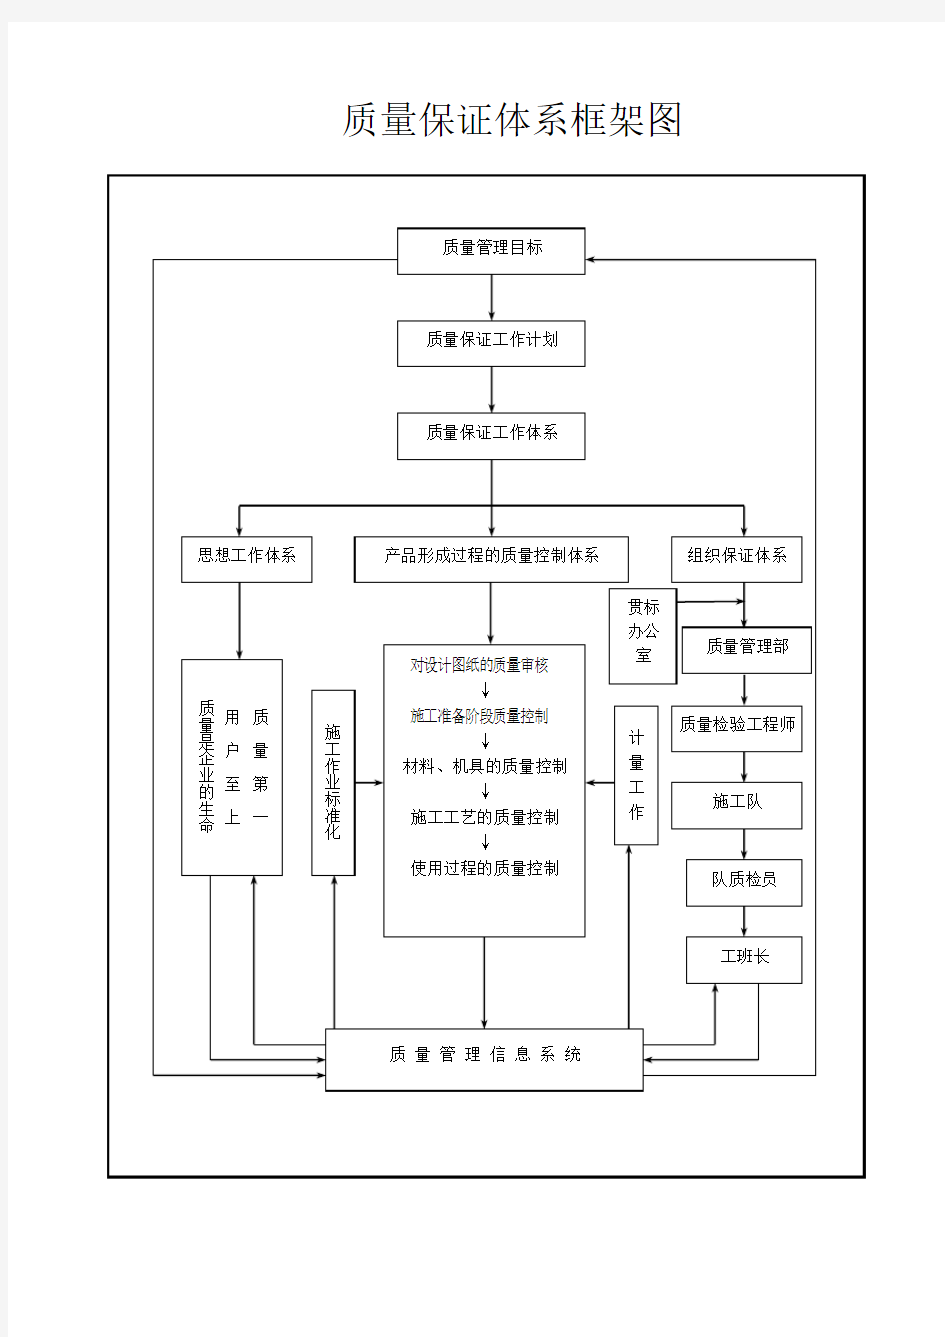 (完整版)安全保证体系框架图